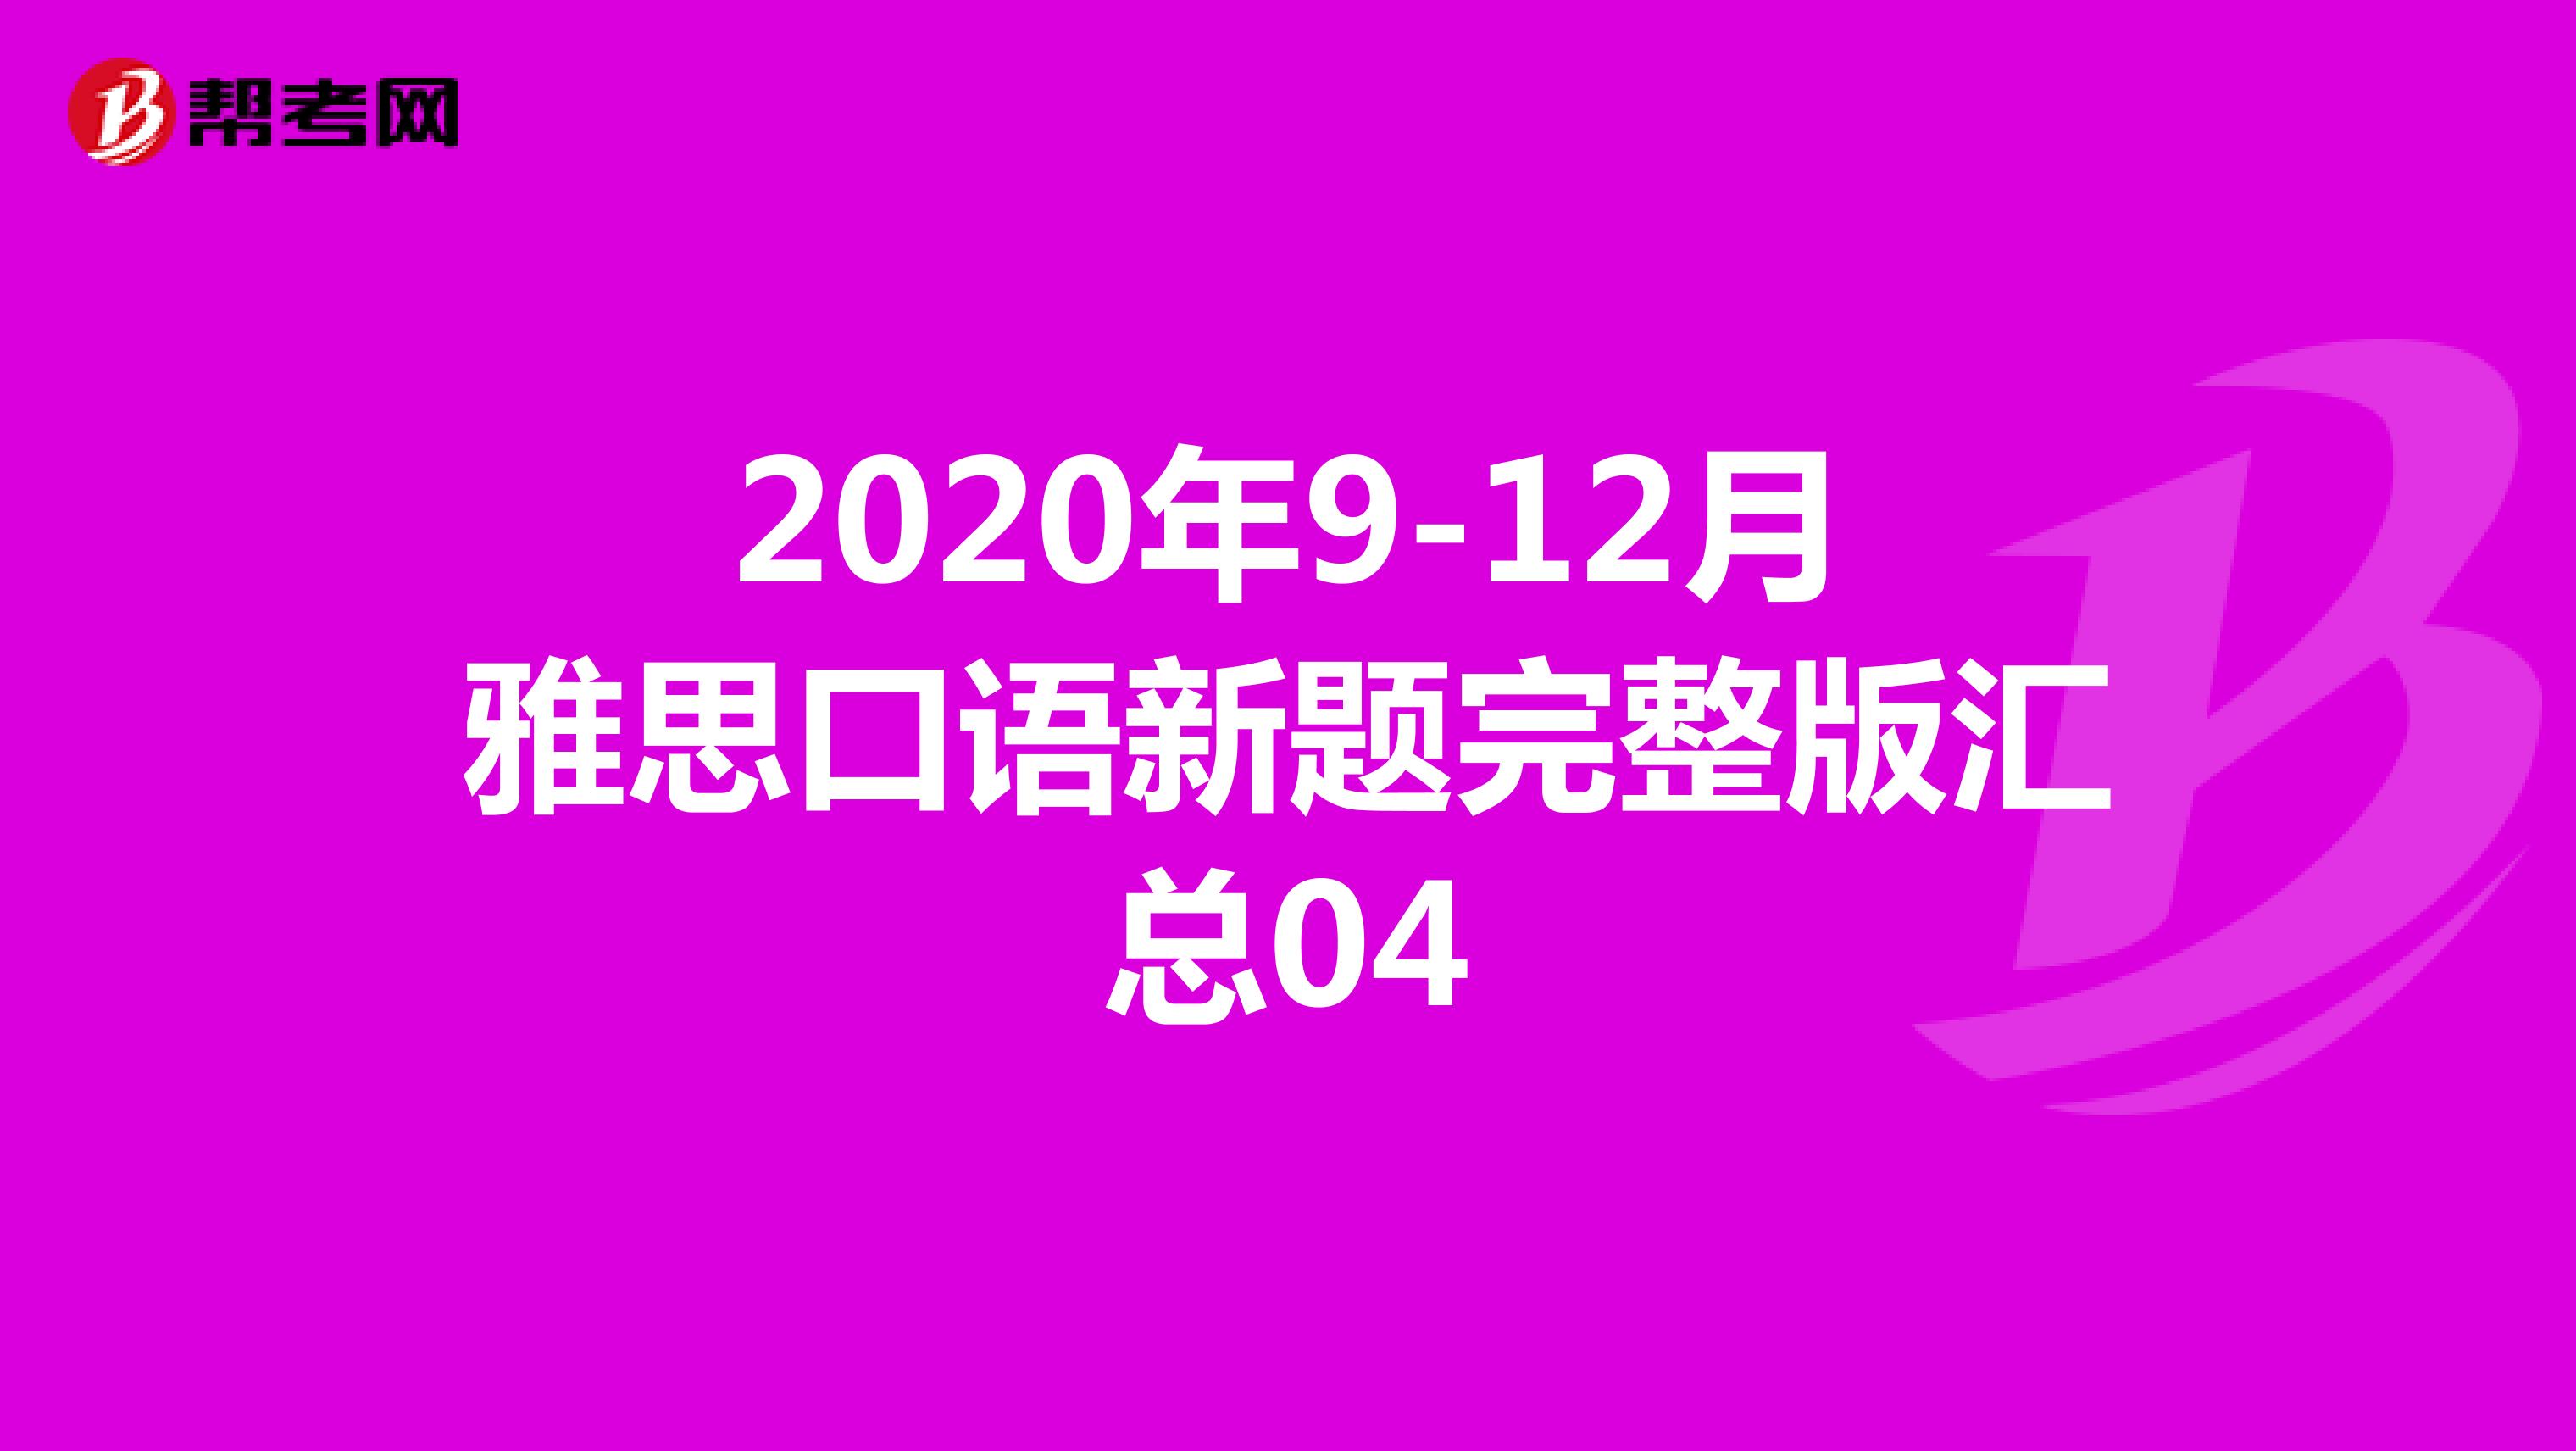 2020年9-12月雅思口语新题完整版汇总04